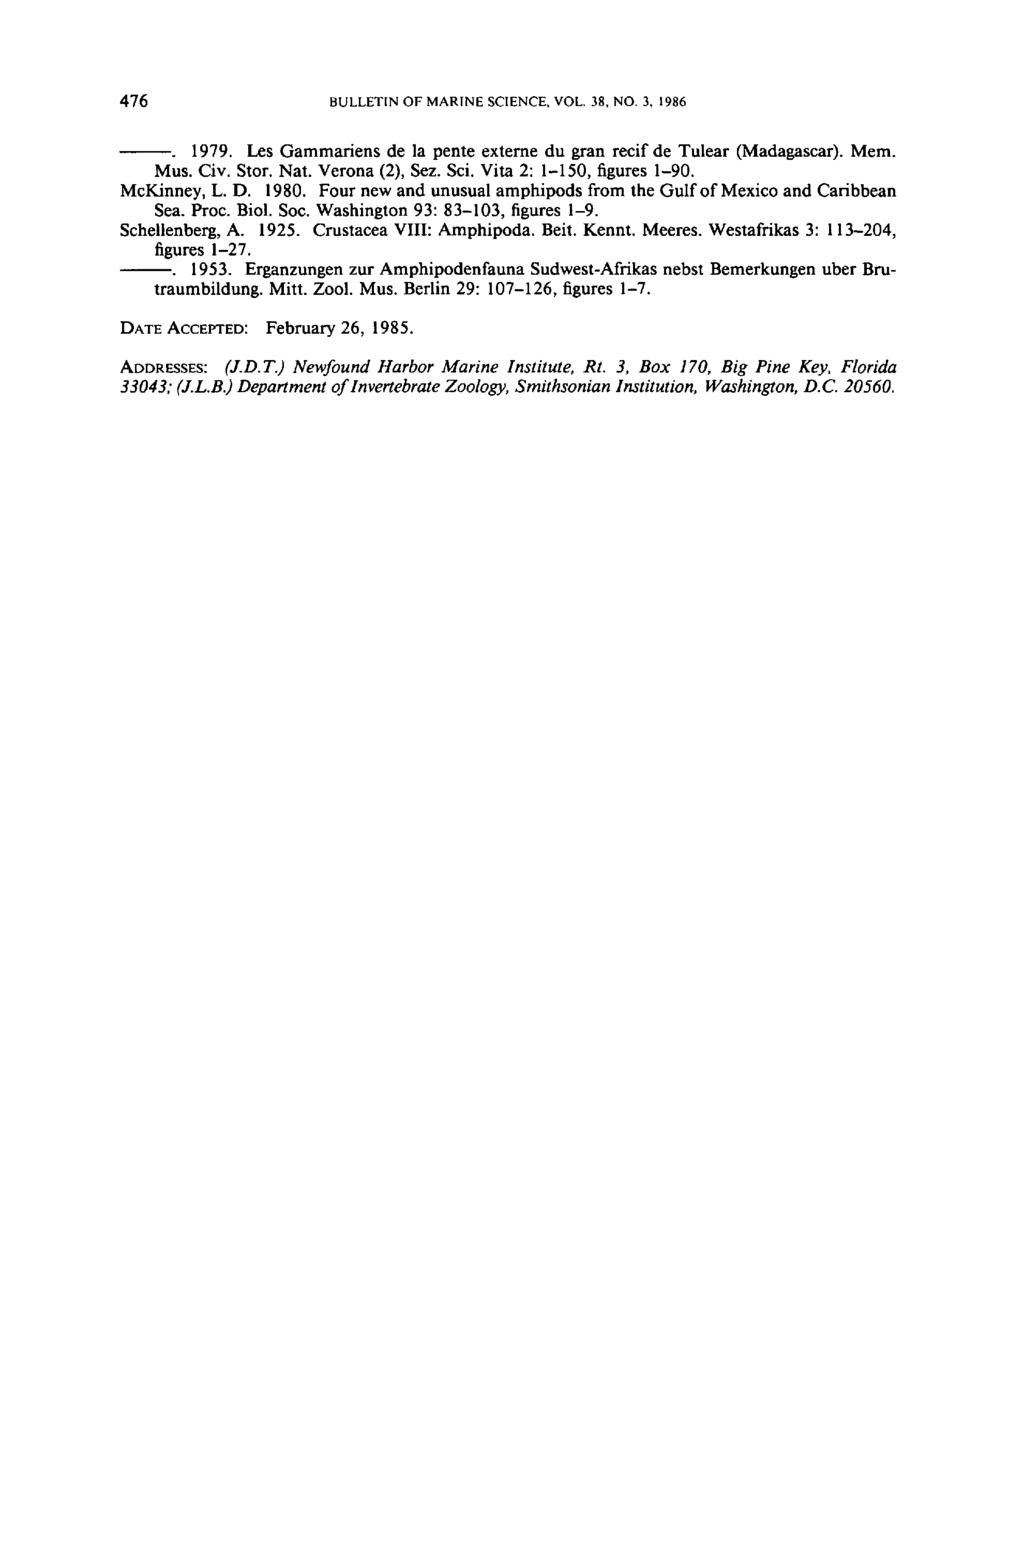 476 BULLETINOFMARINESCIENCE,VOL.38,NO.3, 1986 1979, Les Gammariens de la pente externe du gran recif de Tulear (Madagascar). Mem. Mus. Civ. Stor. Nat. Verona (2), Sez. Sci.